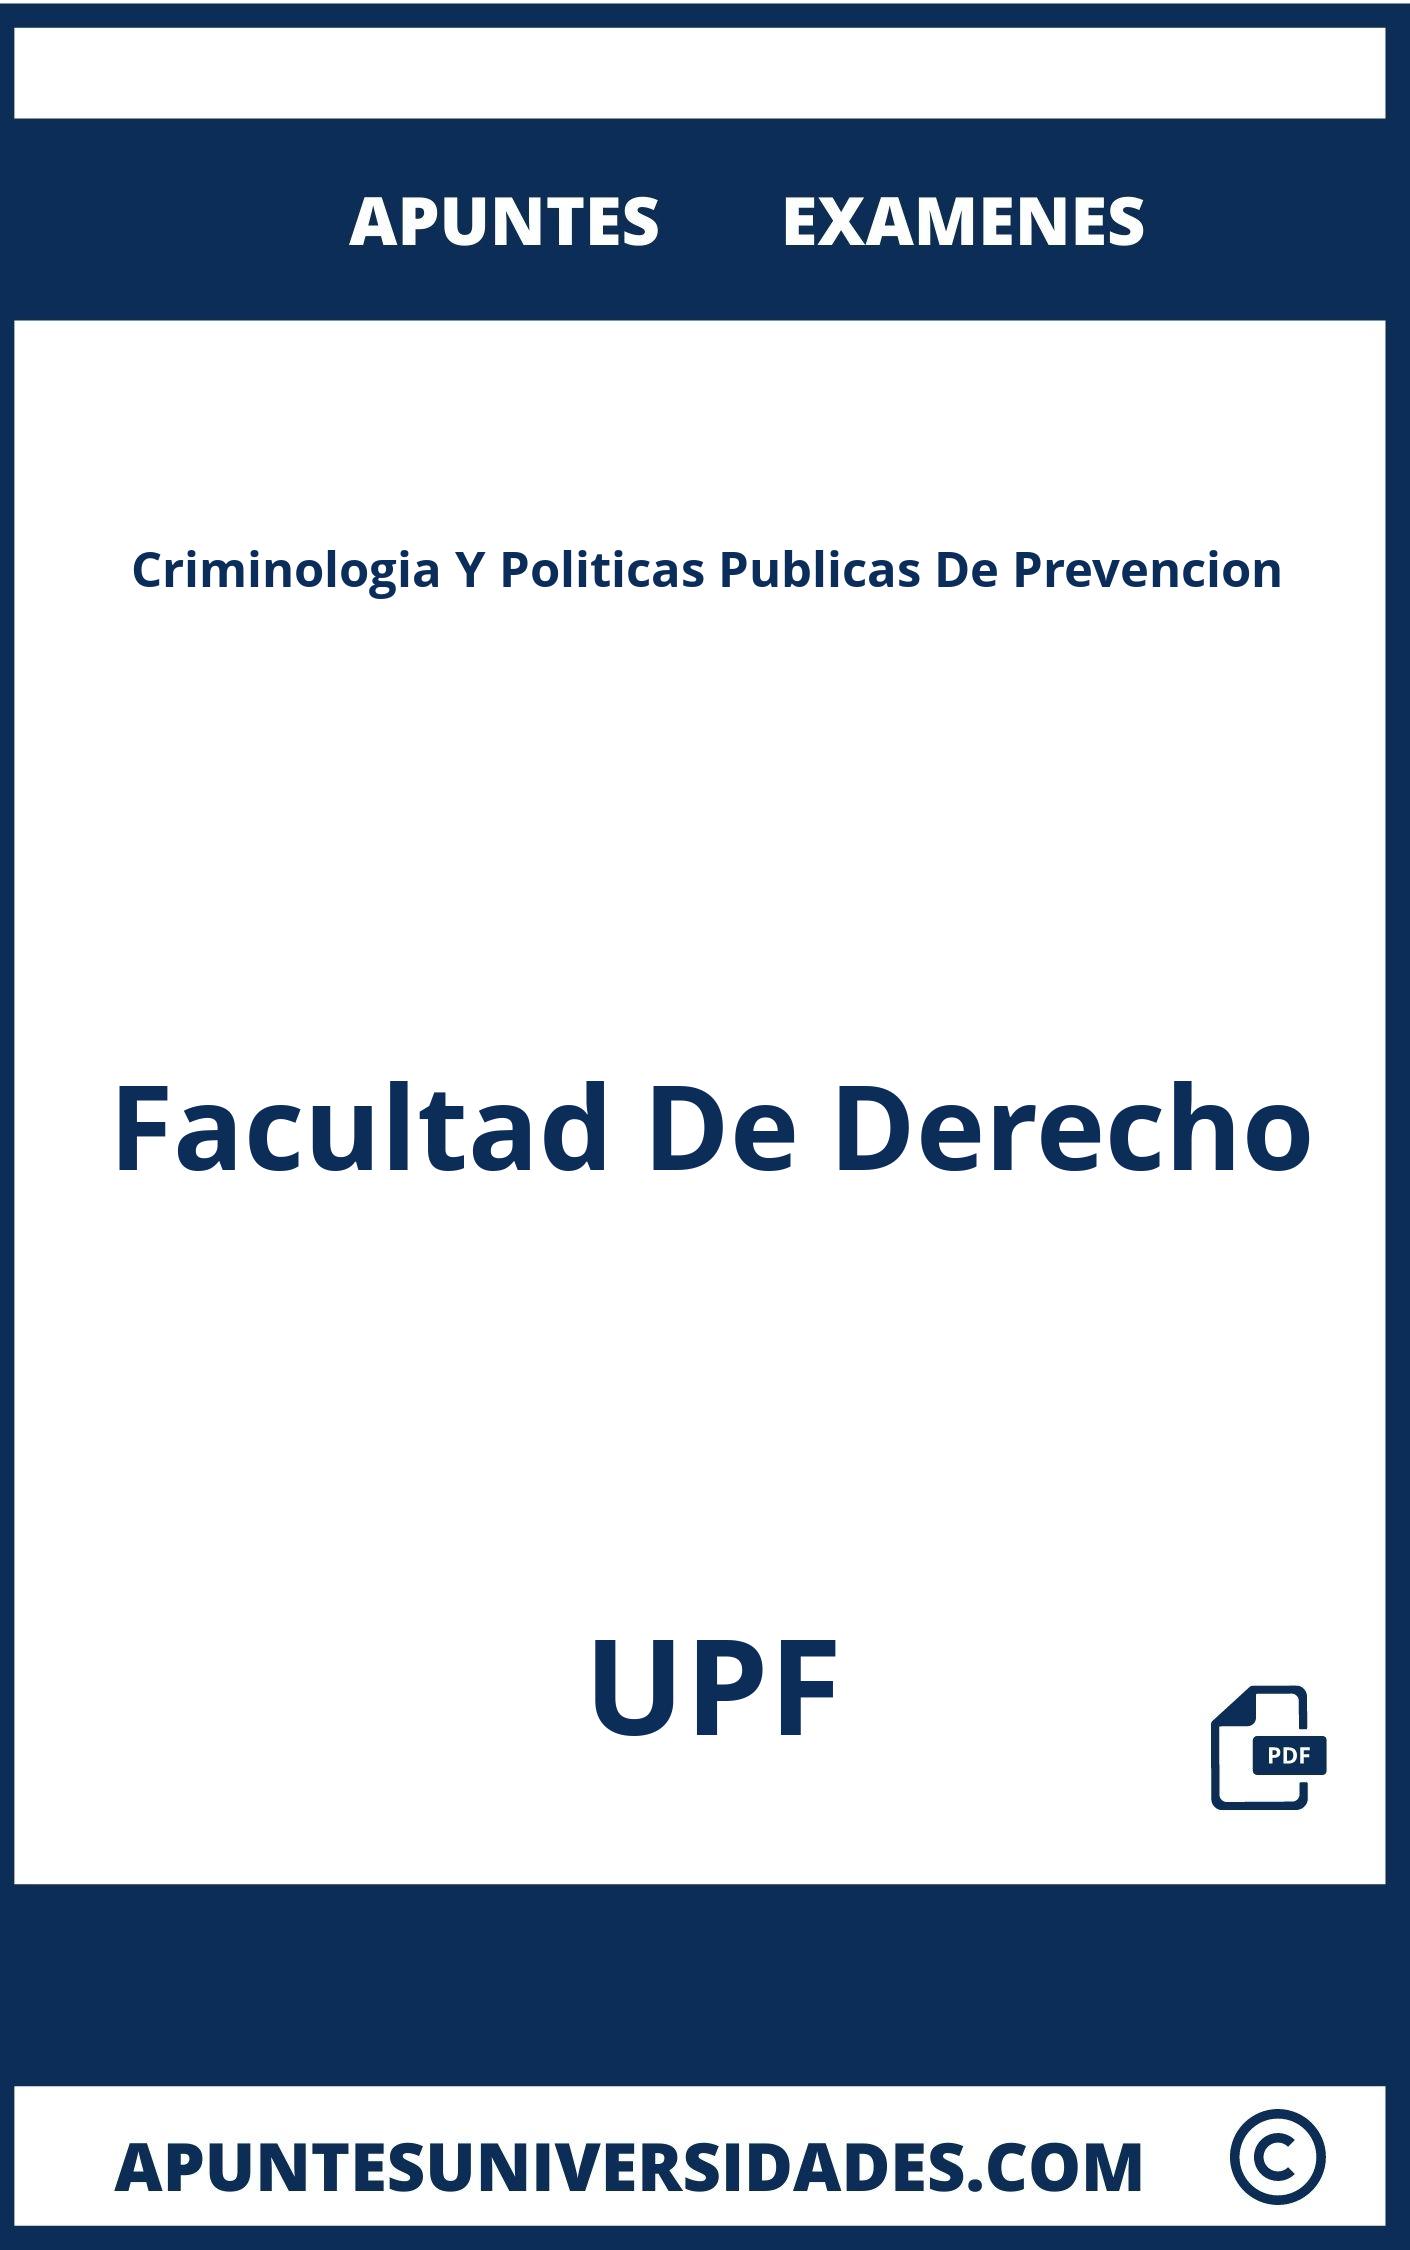 Criminologia Y Politicas Publicas De Prevencion UPF Examenes Apuntes